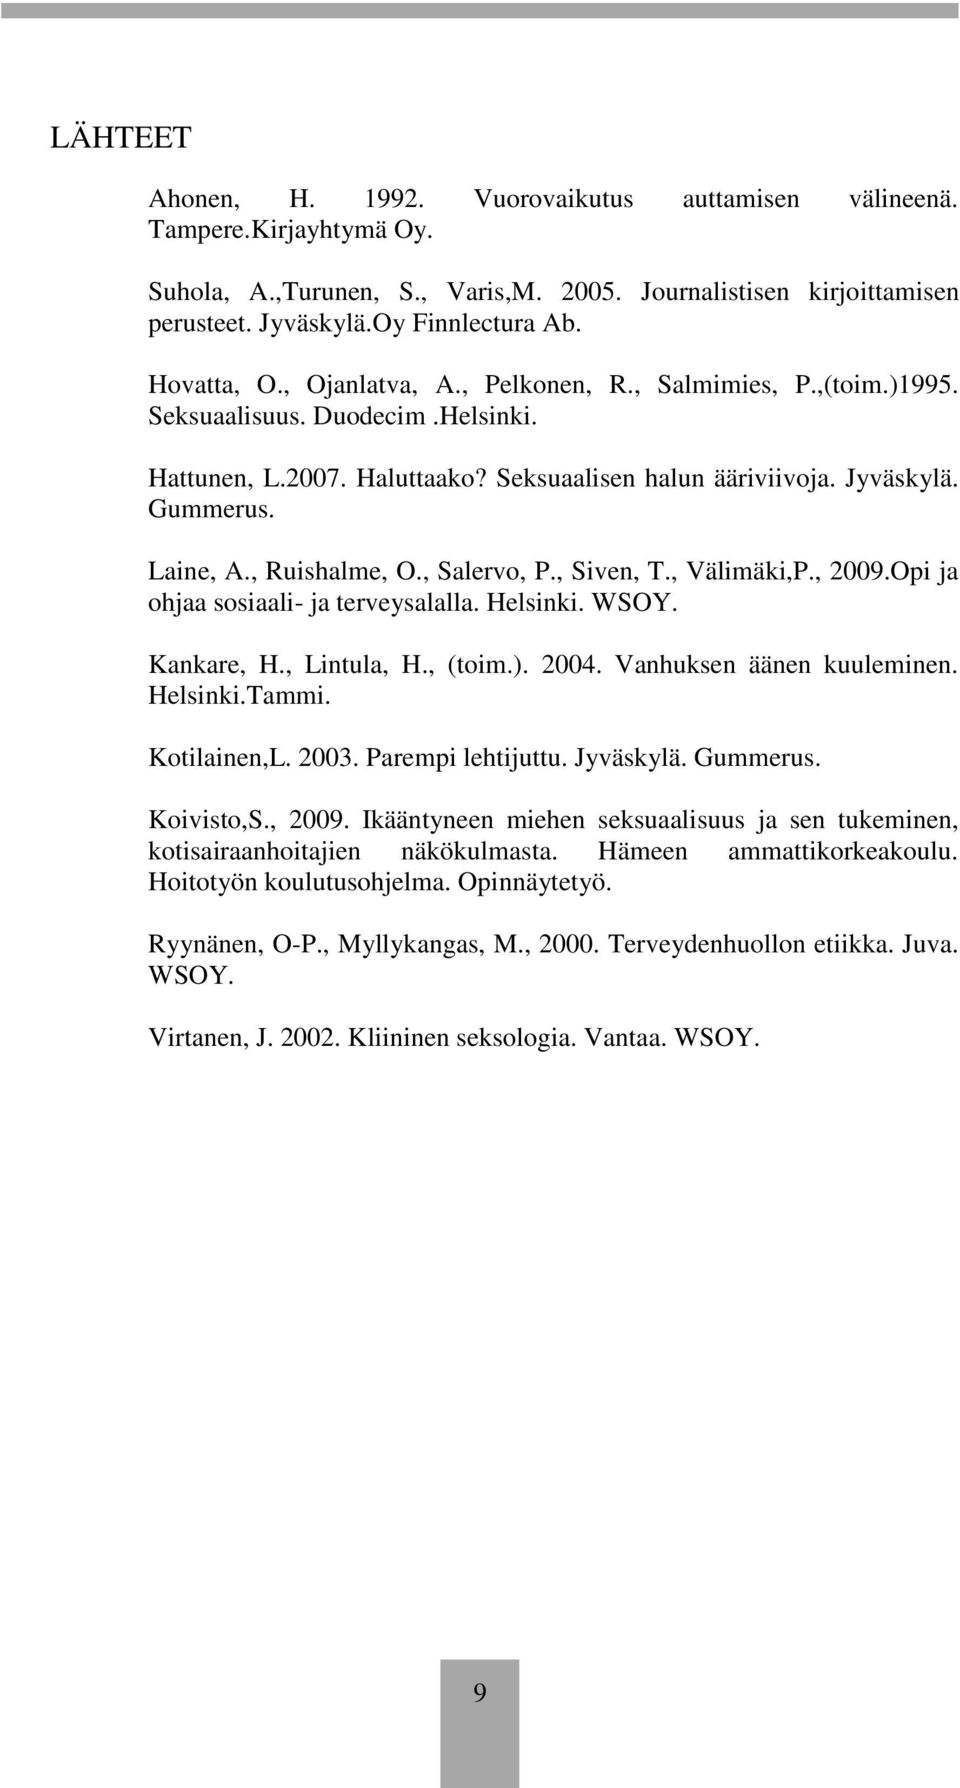 , Ruishalme, O., Salervo, P., Siven, T., Välimäki,P., 2009.Opi ja ohjaa sosiaali- ja terveysalalla. Helsinki. WSOY. Kankare, H., Lintula, H., (toim.). 2004. Vanhuksen äänen kuuleminen. Helsinki.Tammi.